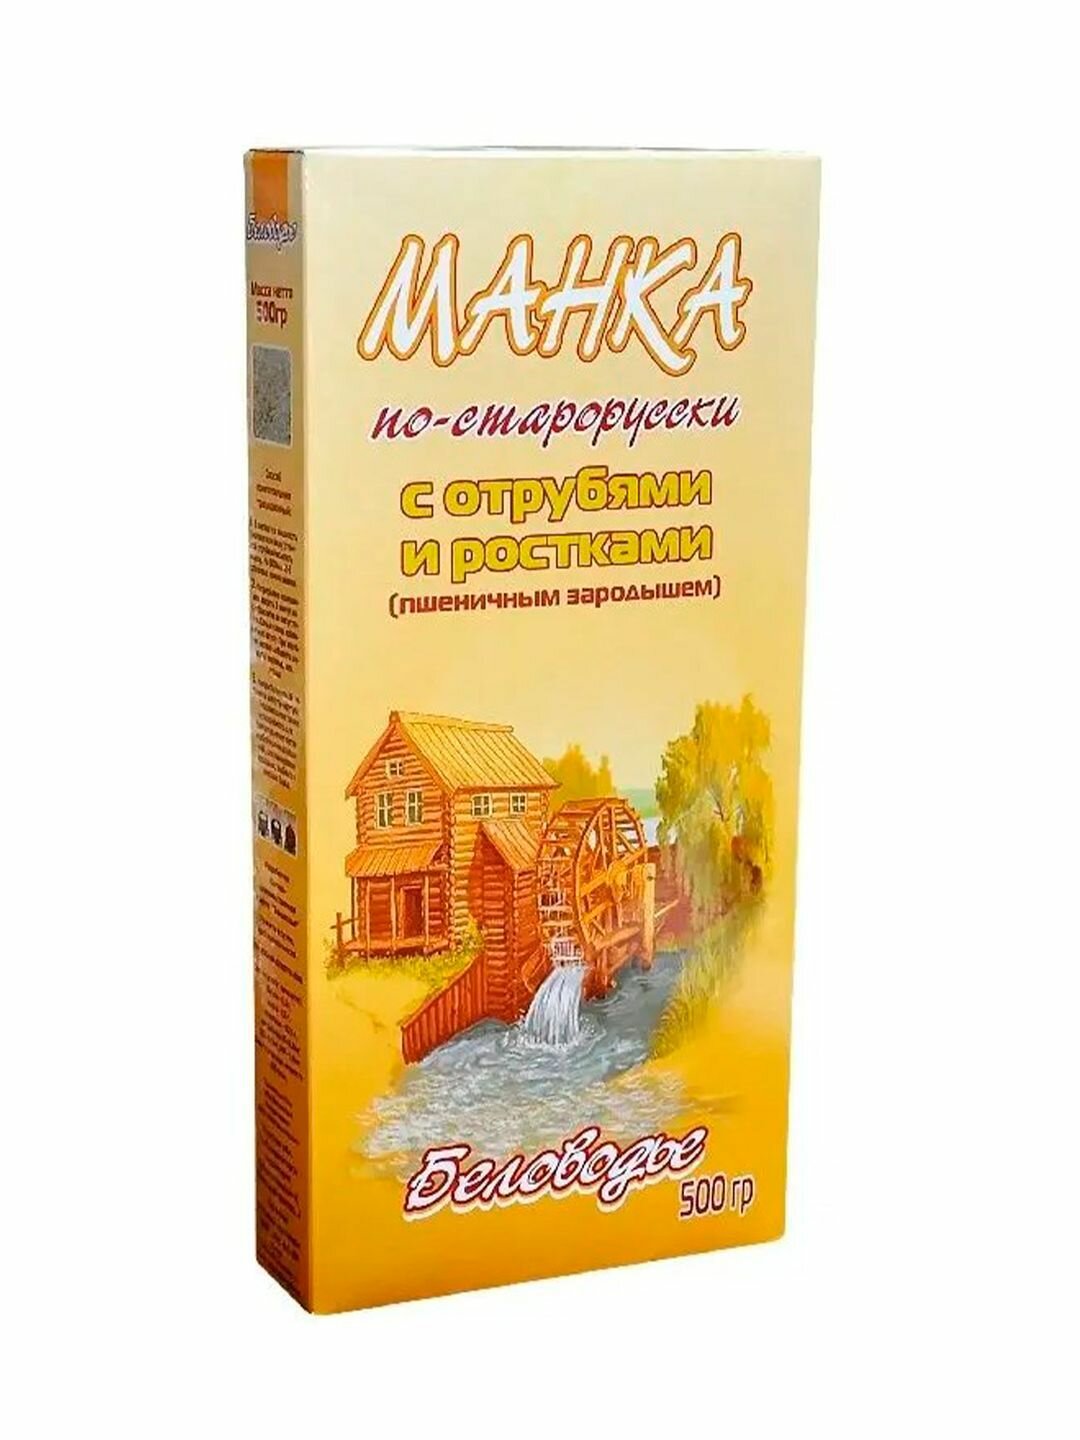 Манка (Крупка) по-старорусски с отрубями и ростками (пшеничным зародышем)Беловодье 500 гр